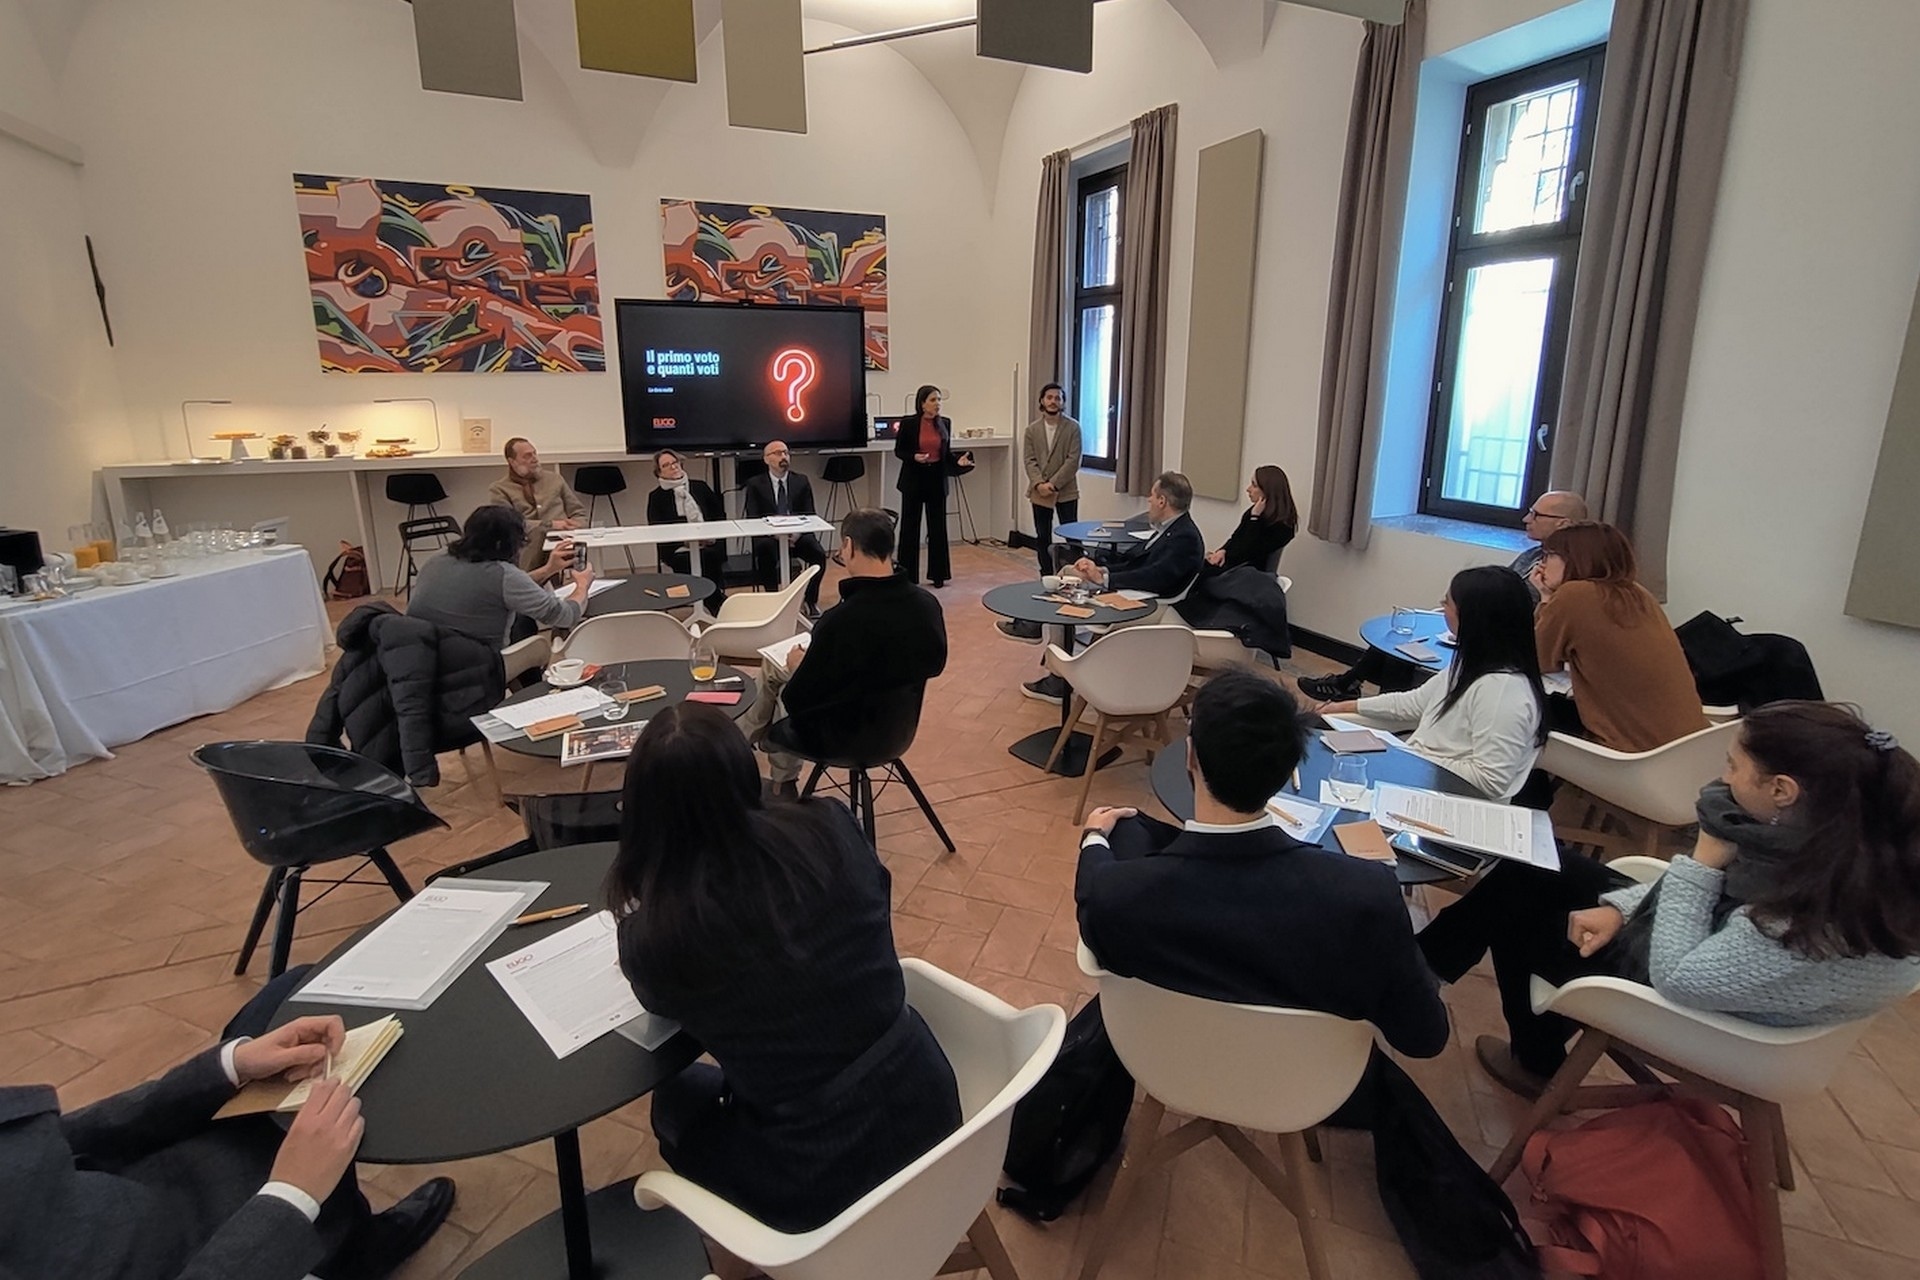 Eligo Next: præsentationen af ​​den nye Eligo Next elektroniske og online afstemningsplatform i Milano af Irene Pugliatti, virksomhedens administrerende direktør